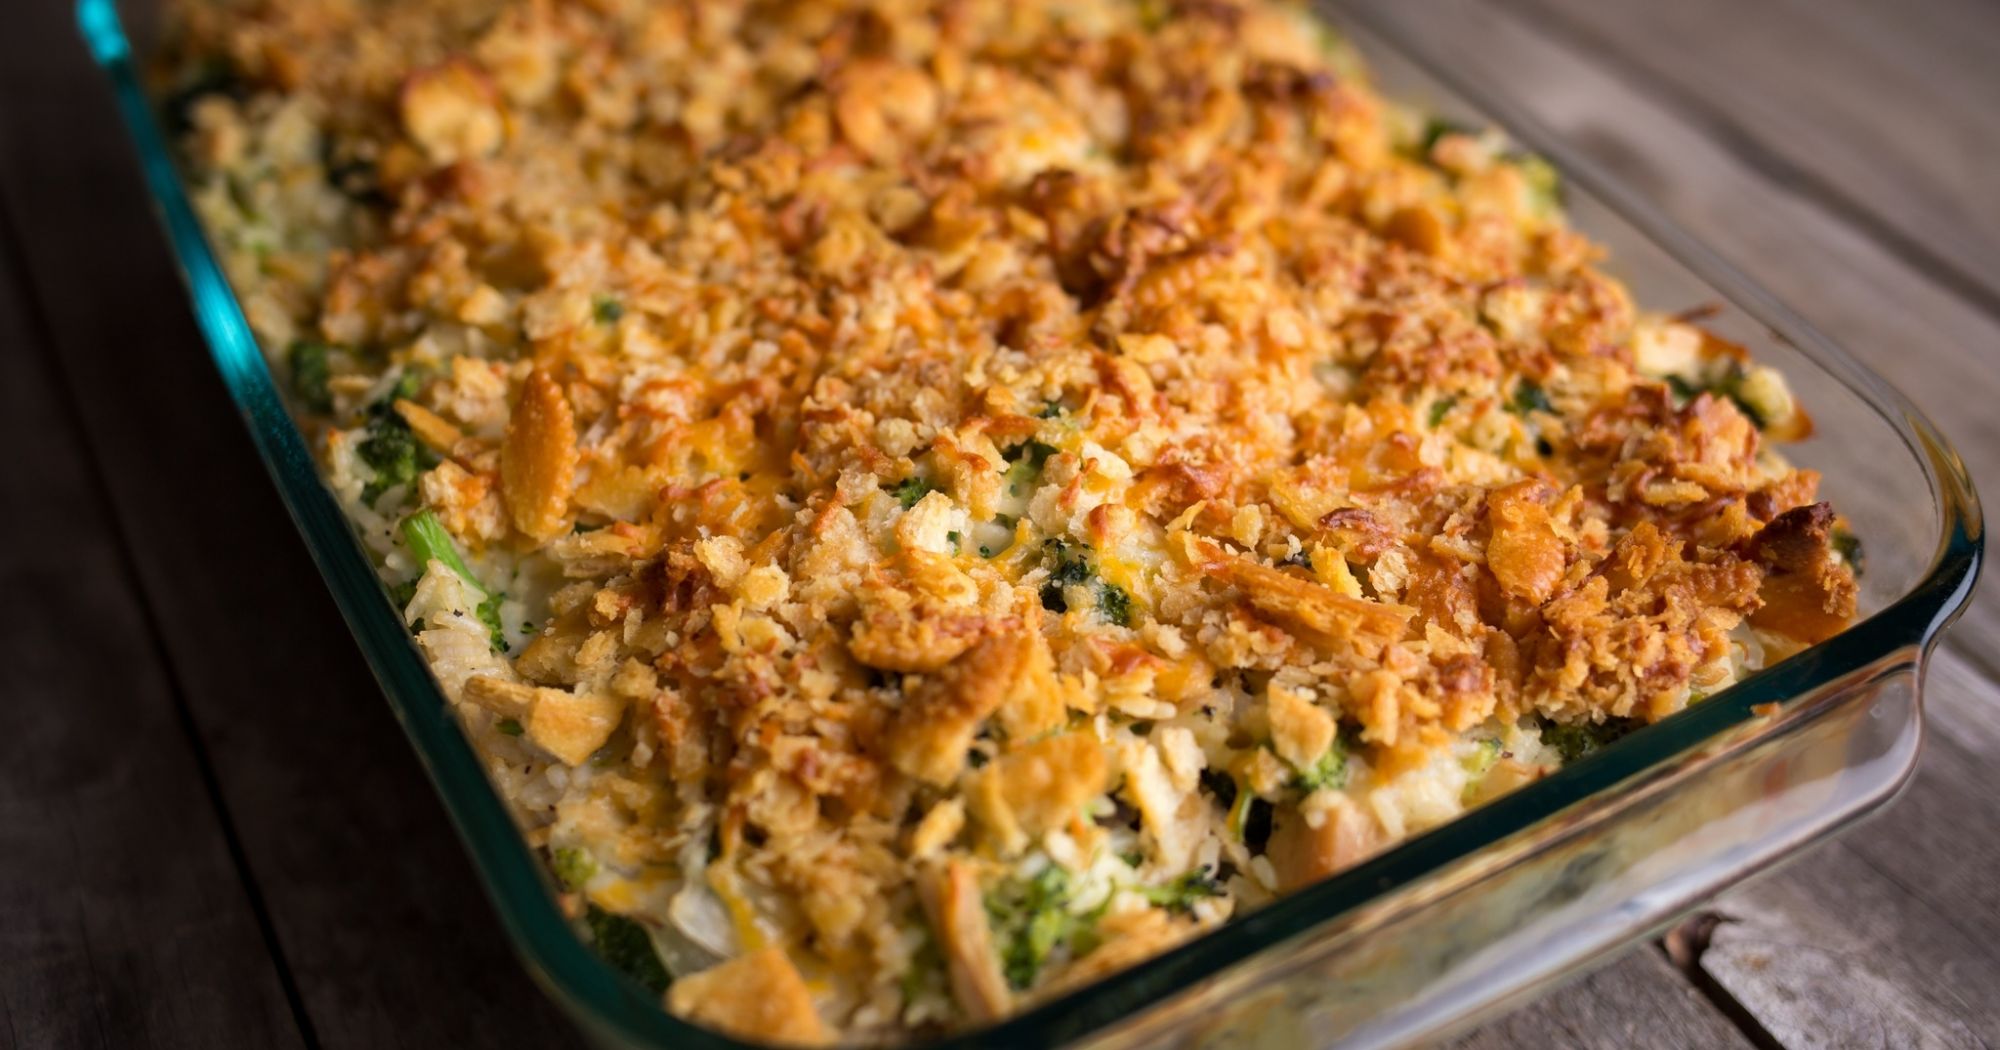 Broccoli, Chicken and Rice Casserole Recipe - (4.5/5)